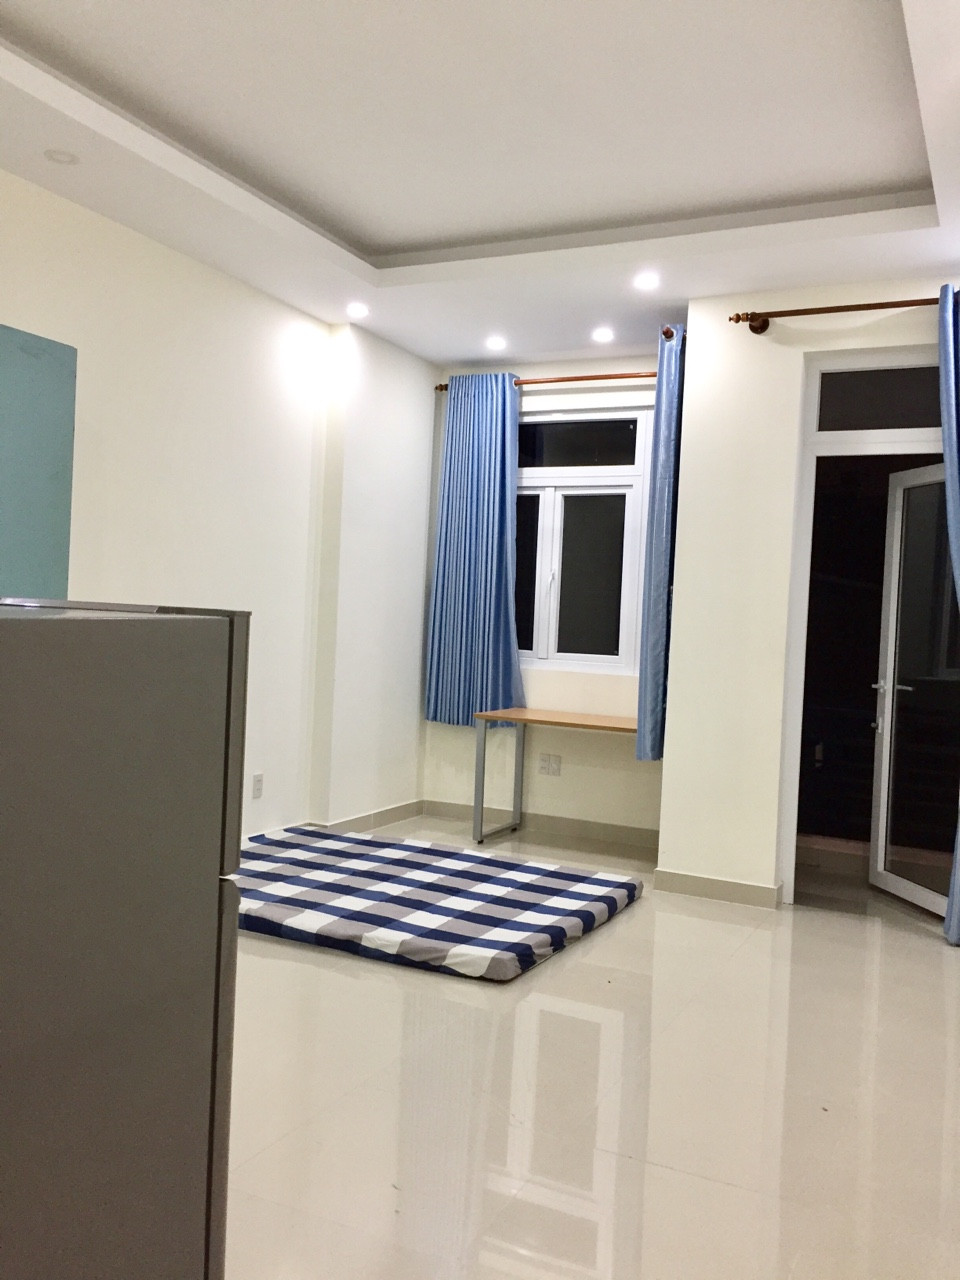 Căn hộ dịch vụ full nội thất mới xây dựng cho thuê tại Trần Não, có bếp, chỗ để xe free